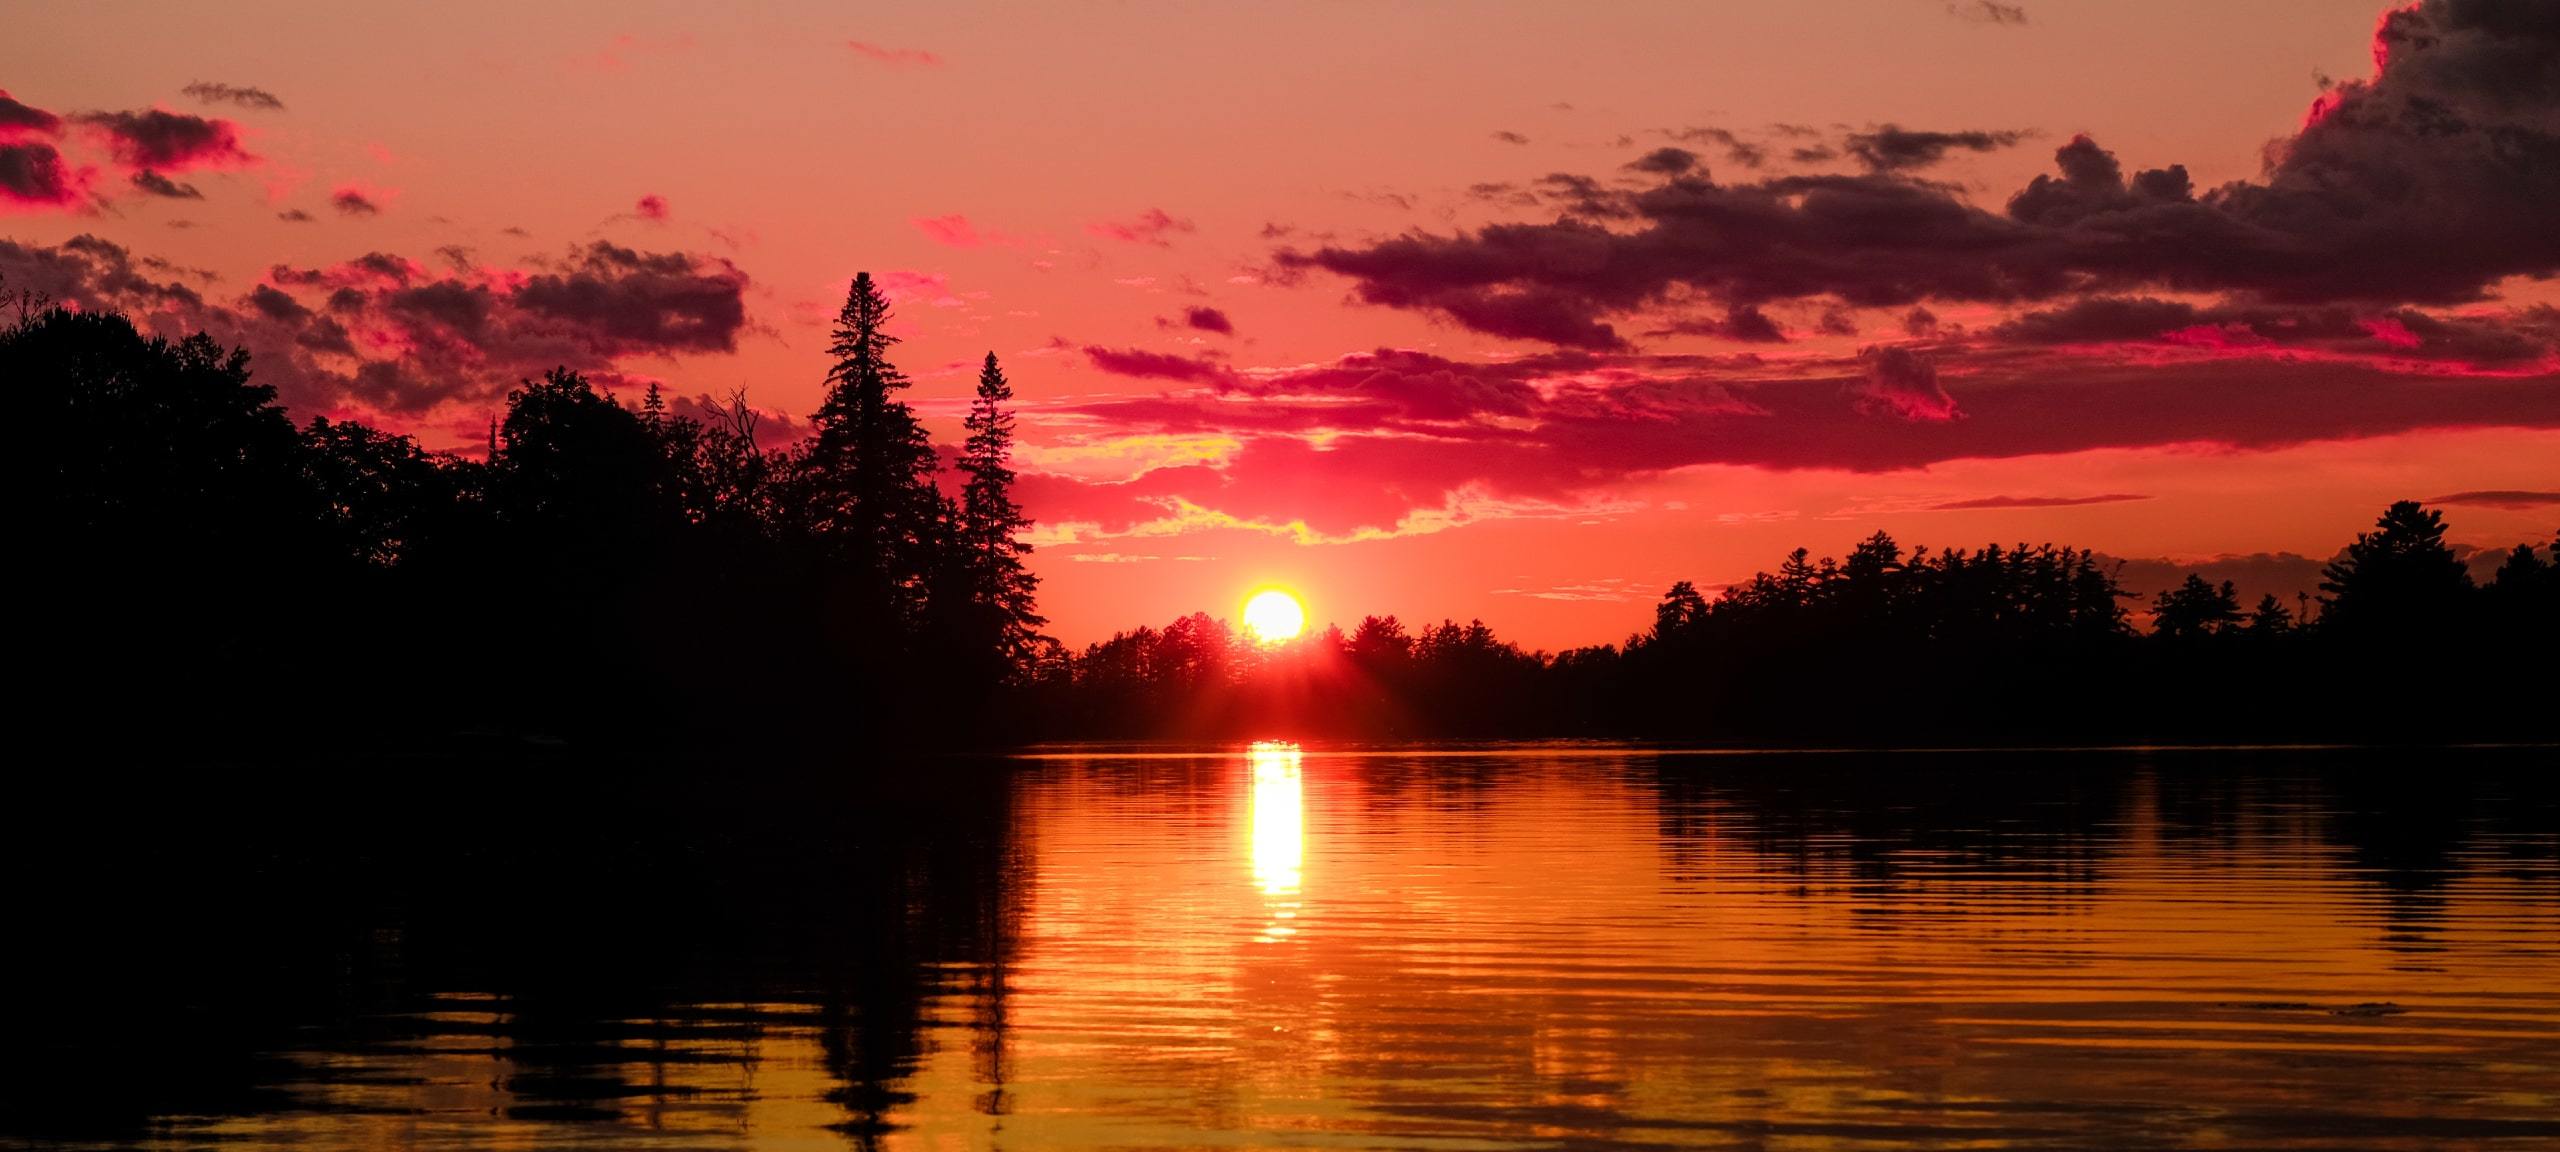 Red sunset over Muskoka lake near Hillside, ON